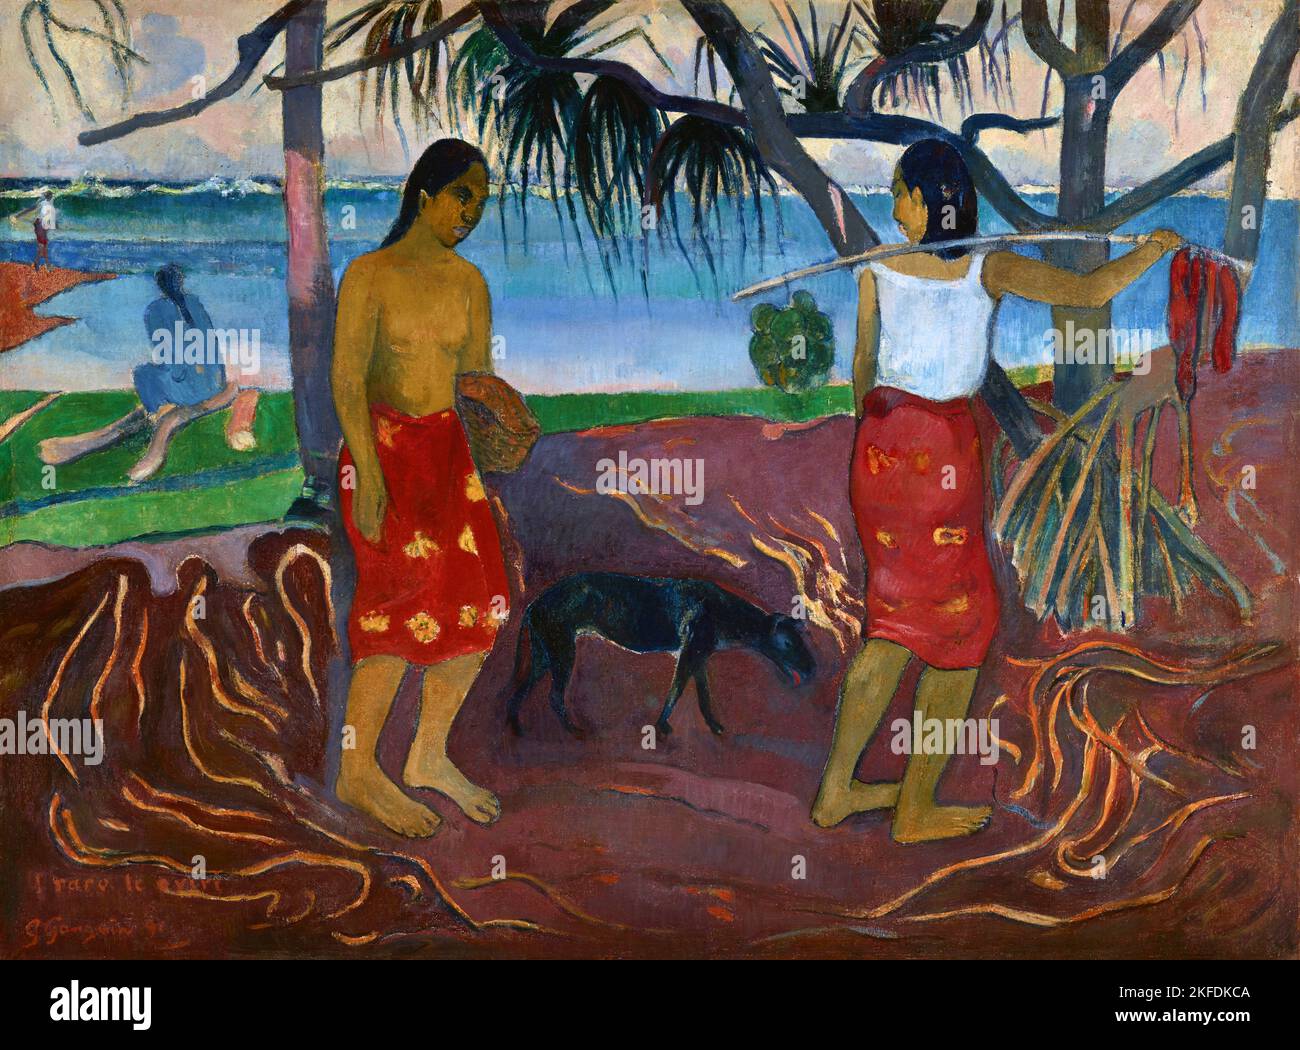 Tahiti: 'I Raro Te Oviri' (unter dem Pandanus). Öl auf Leinwand von Paul Gauguin (7. Juni 1848 - 8. Mai 1903), 1891. Paul Gauguin wurde 1848 in Paris geboren und verbrachte einen Teil seiner Kindheit in Peru. Er arbeitete als Börsenmakler mit wenig Erfolg und litt an schweren Depressionen. Er malte auch. 1891 segelte Gauguin, frustriert durch mangelnde Anerkennung zu Hause und finanziell mittellos, in die Tropen, um der europäischen Zivilisation und "allem, was künstlich und konventionell ist" zu entkommen. Seine Zeit dort war das Thema von viel Interesse sowohl damals als auch in der Neuzeit. Stockfoto